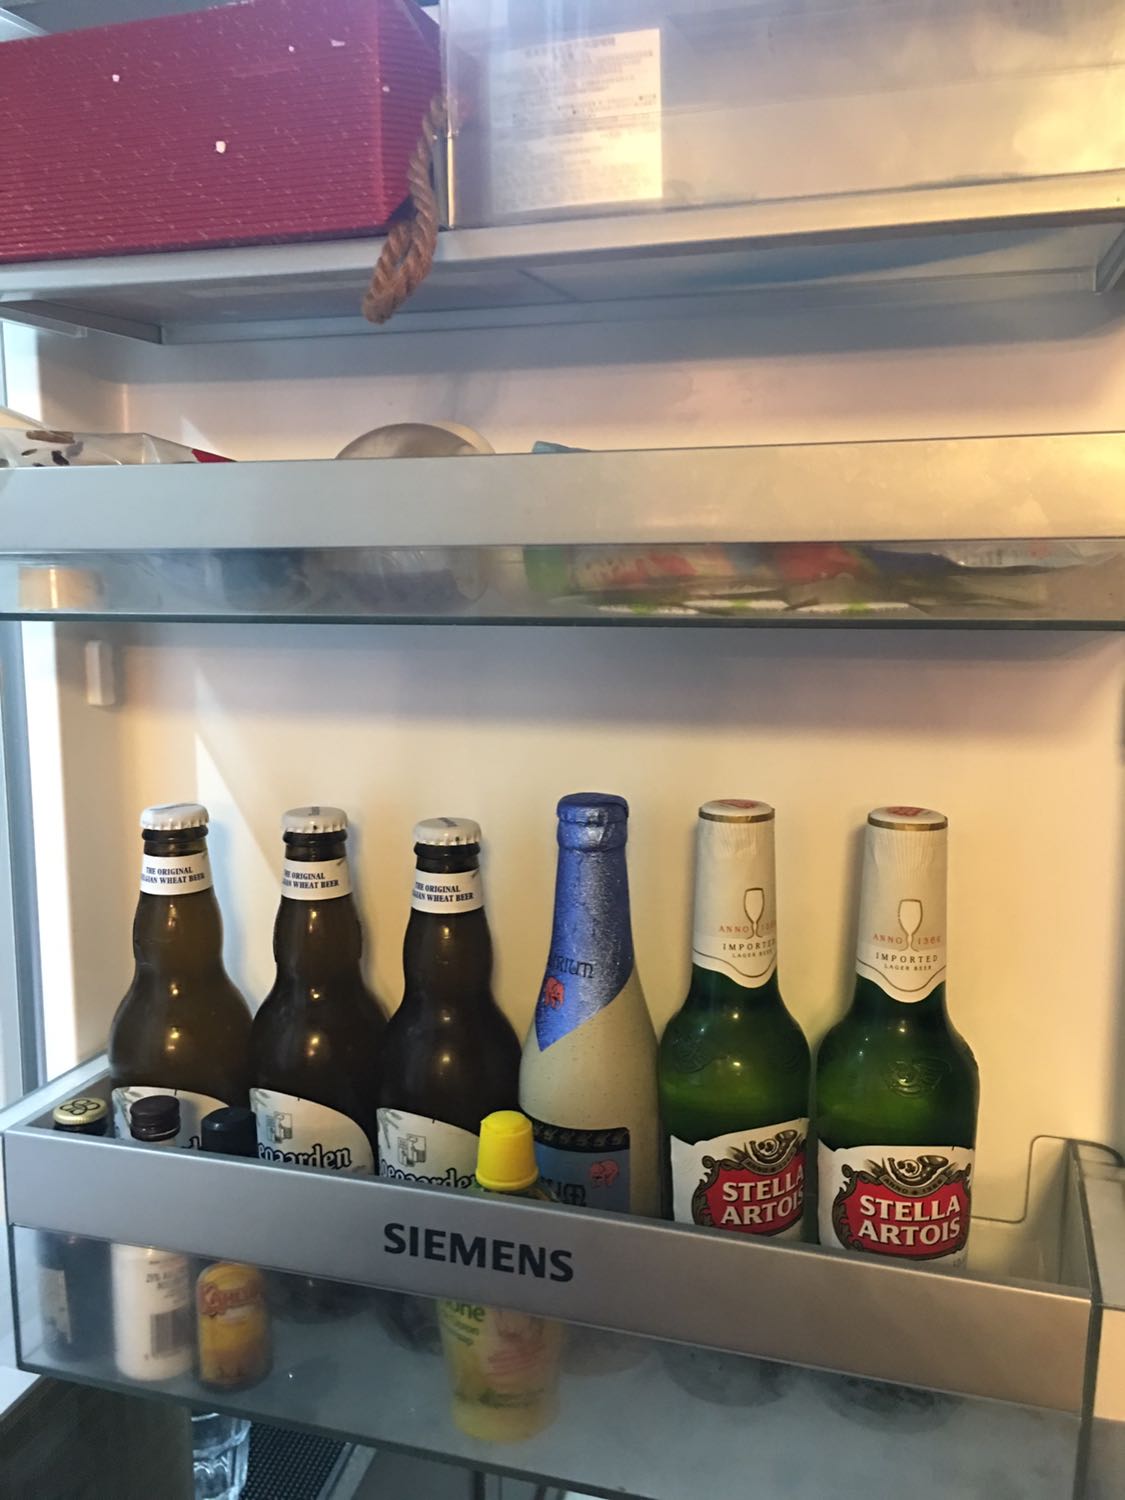 家里冰箱全是酒的图片图片